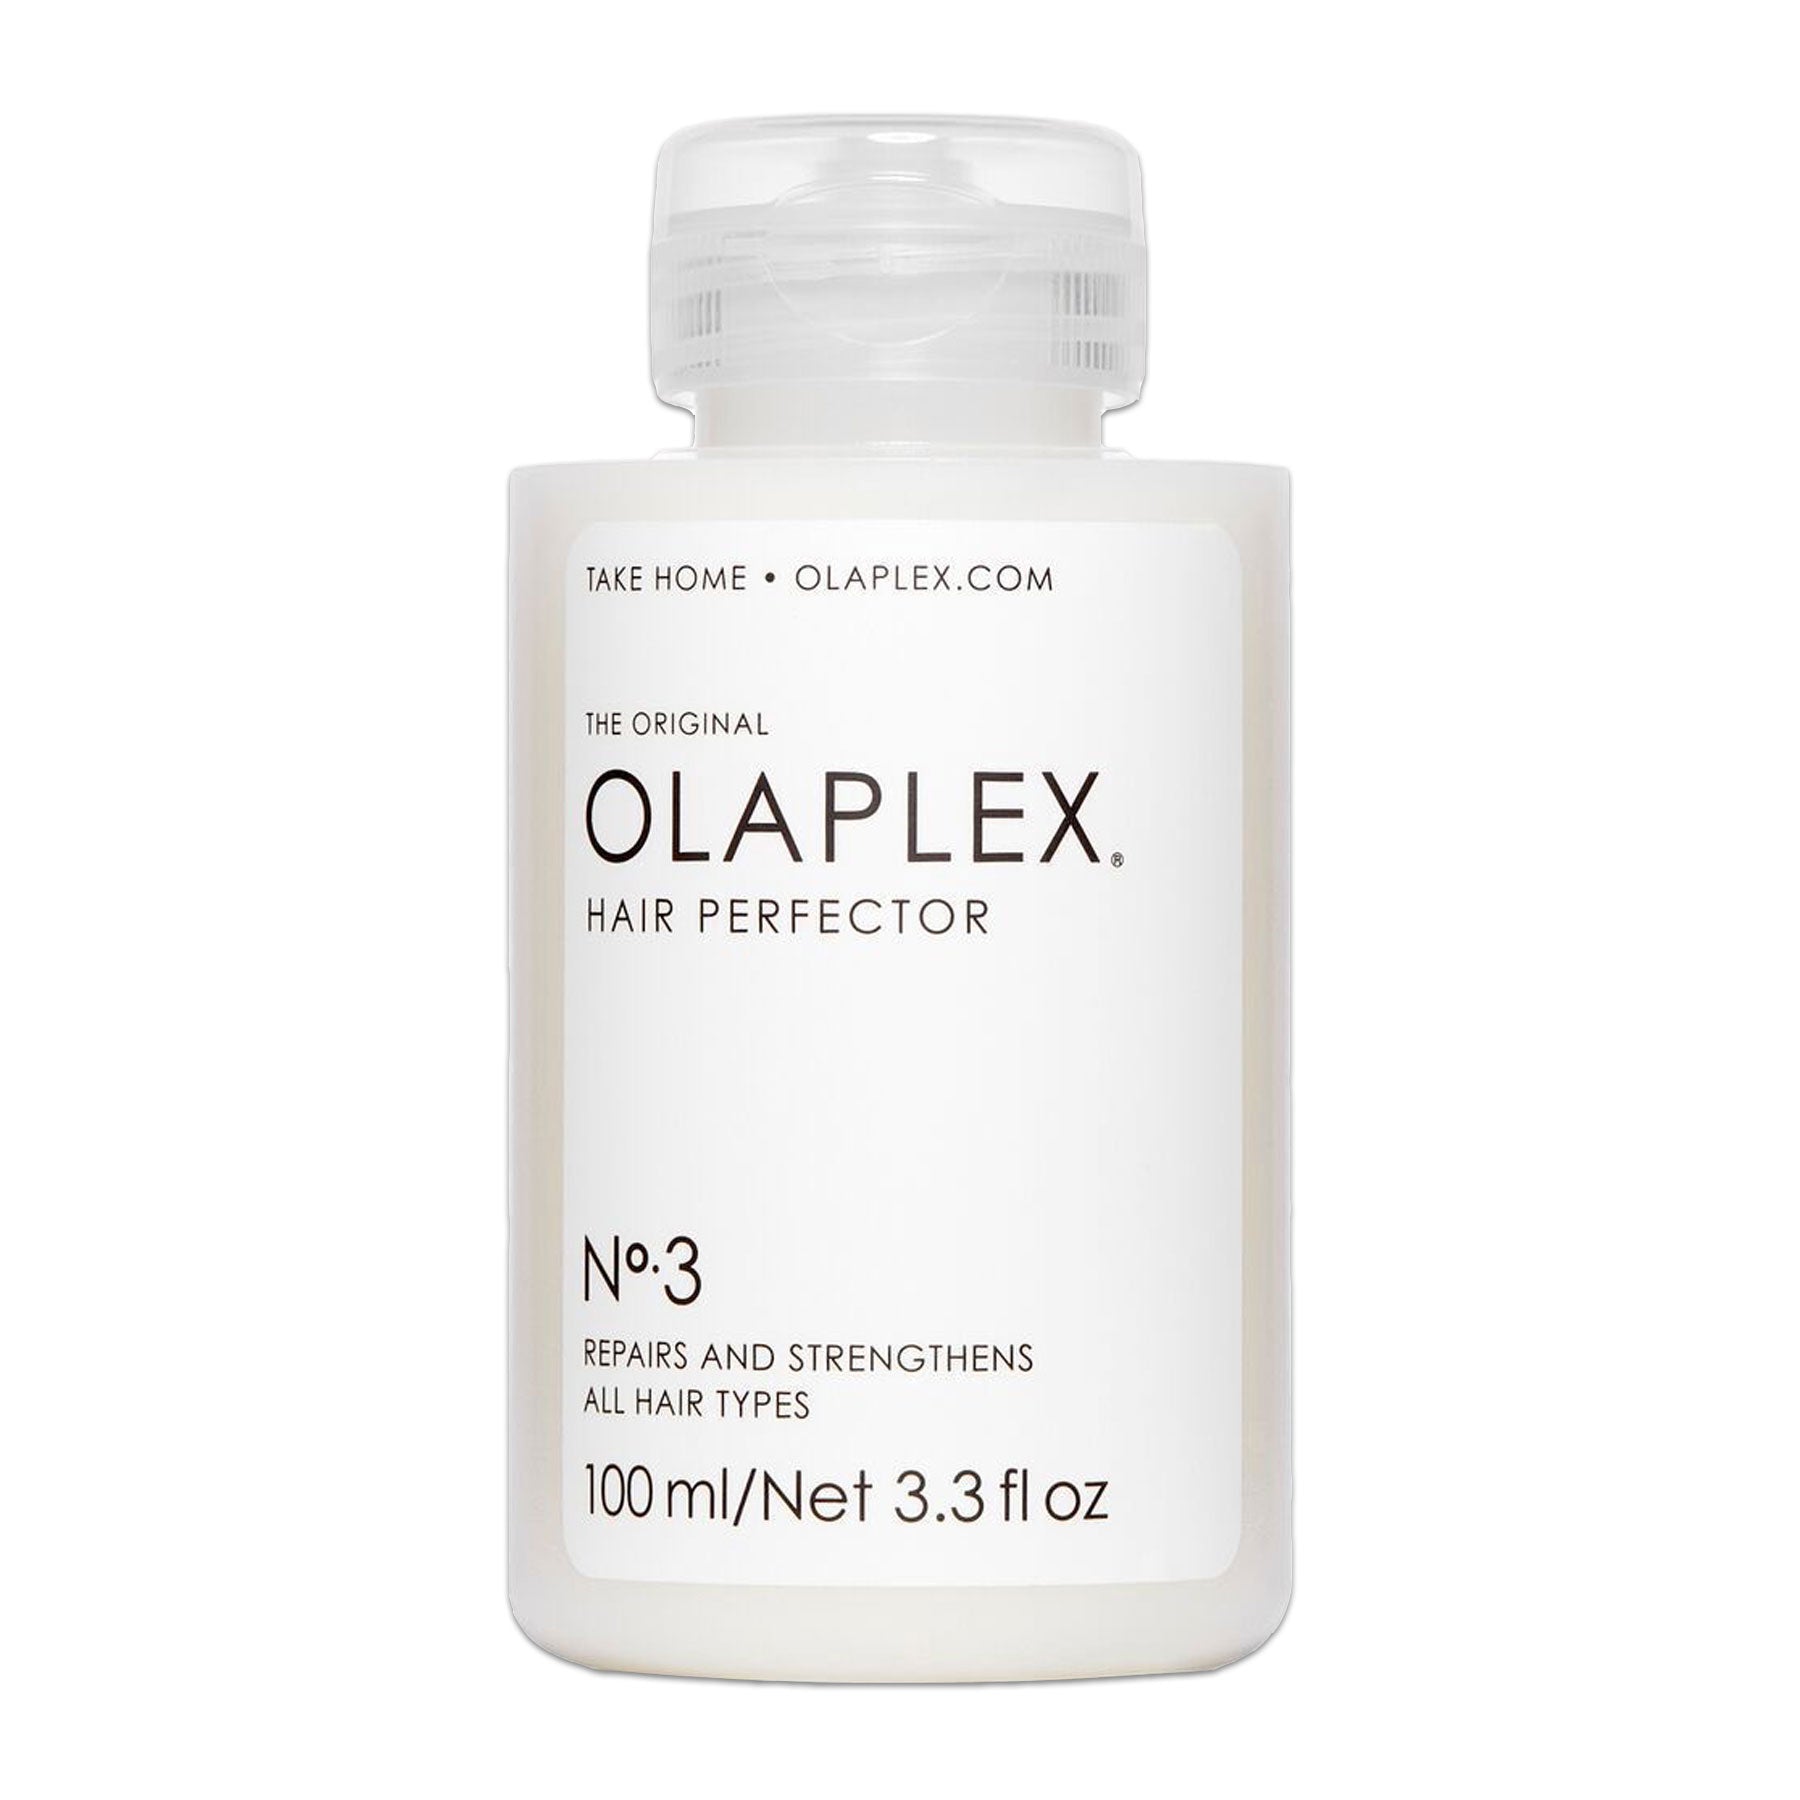 Olaplex No. 3 Hair Perfector, 3.3 Fluid Ounces / 100 Milliliters.